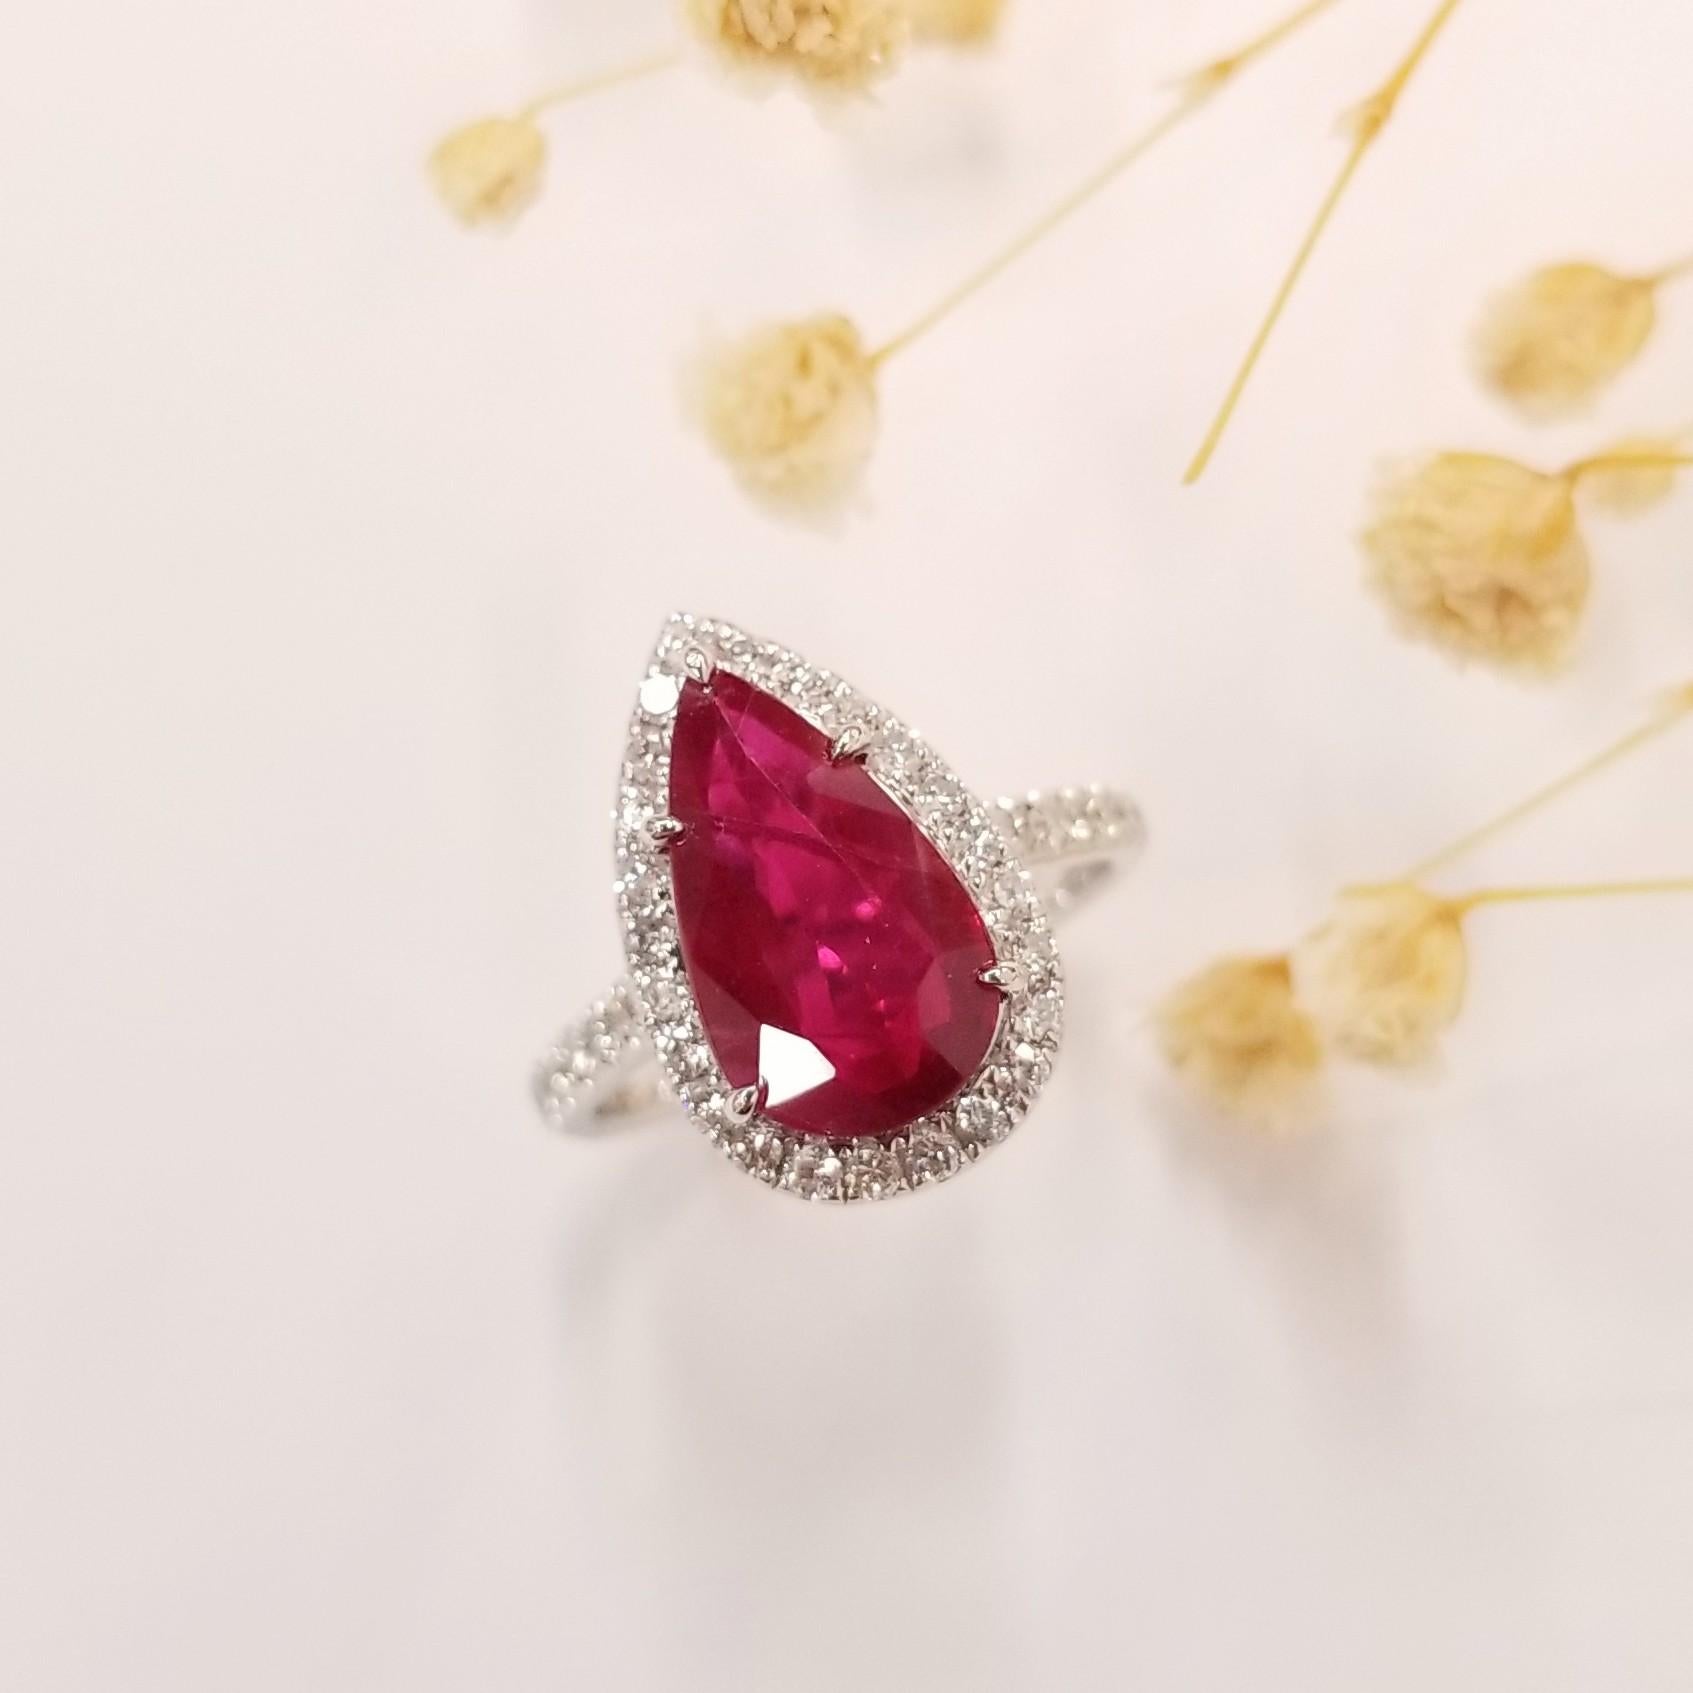 ntroduction d'un magnifique bijou, la bague en rubis birman certifié AIG de 3,03 carats, d'un rouge vif captivant, de forme coussin et serti d'un halo exquis. Réalisée en or blanc 18 carats, cette bague de style moderne est ornée de diamants